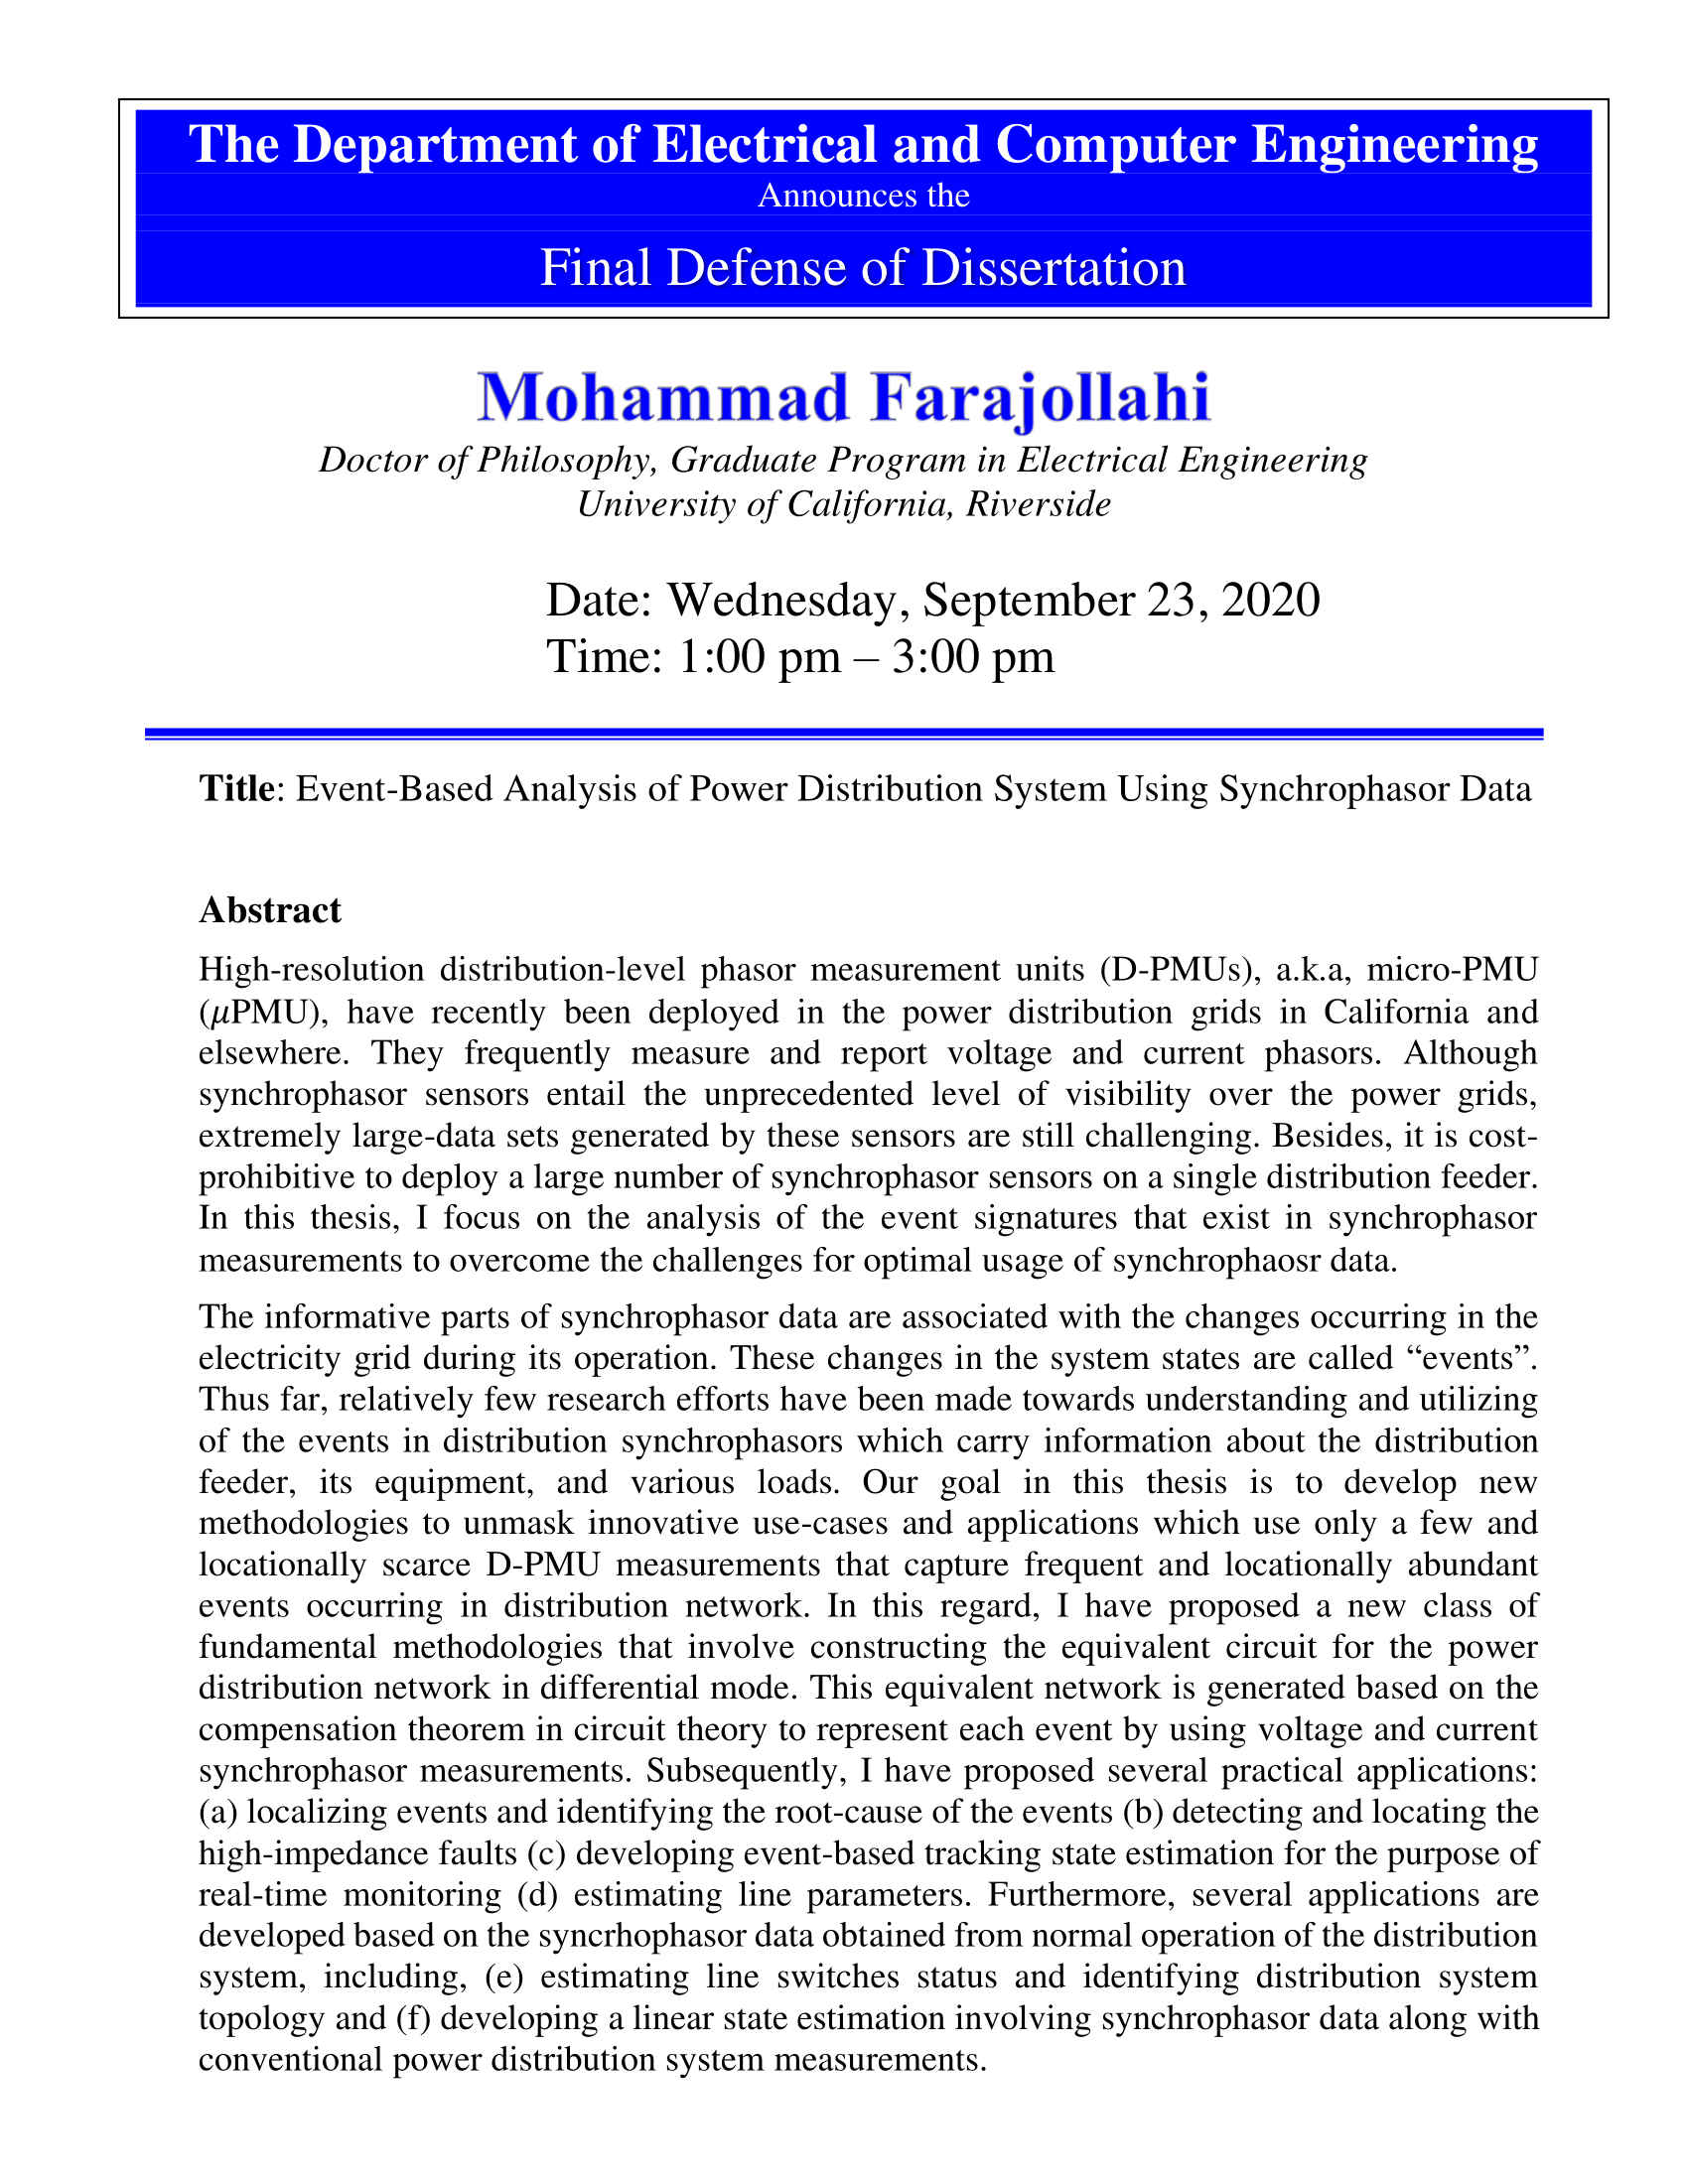 PhD Dissertation Defense Flyer_Mohammad Farajollahi